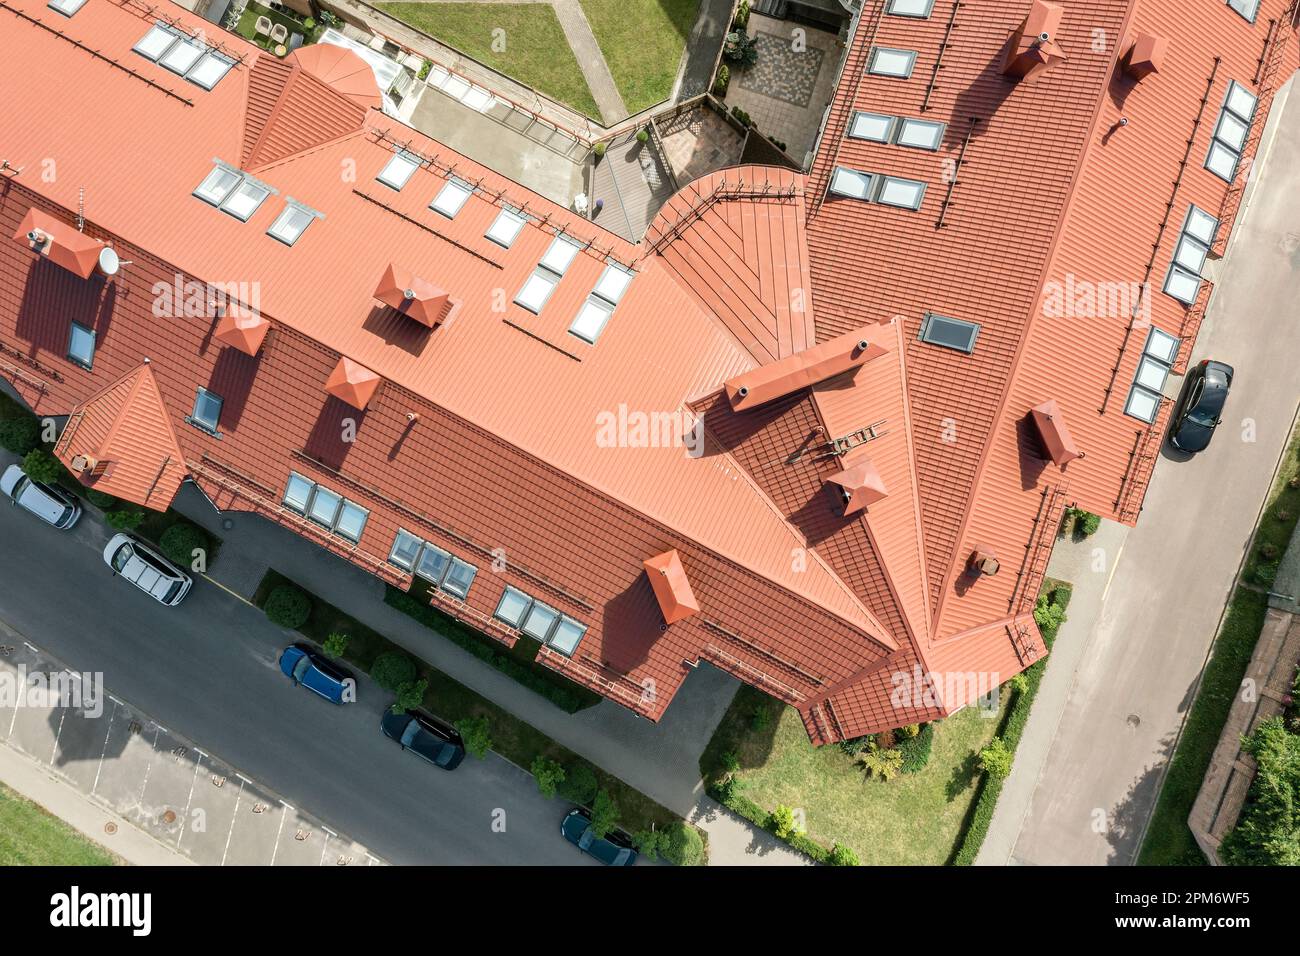 photographie aérienne urbaine. maisons résidentielles modernes avec toits recouverts de tuiles rouges. Banque D'Images